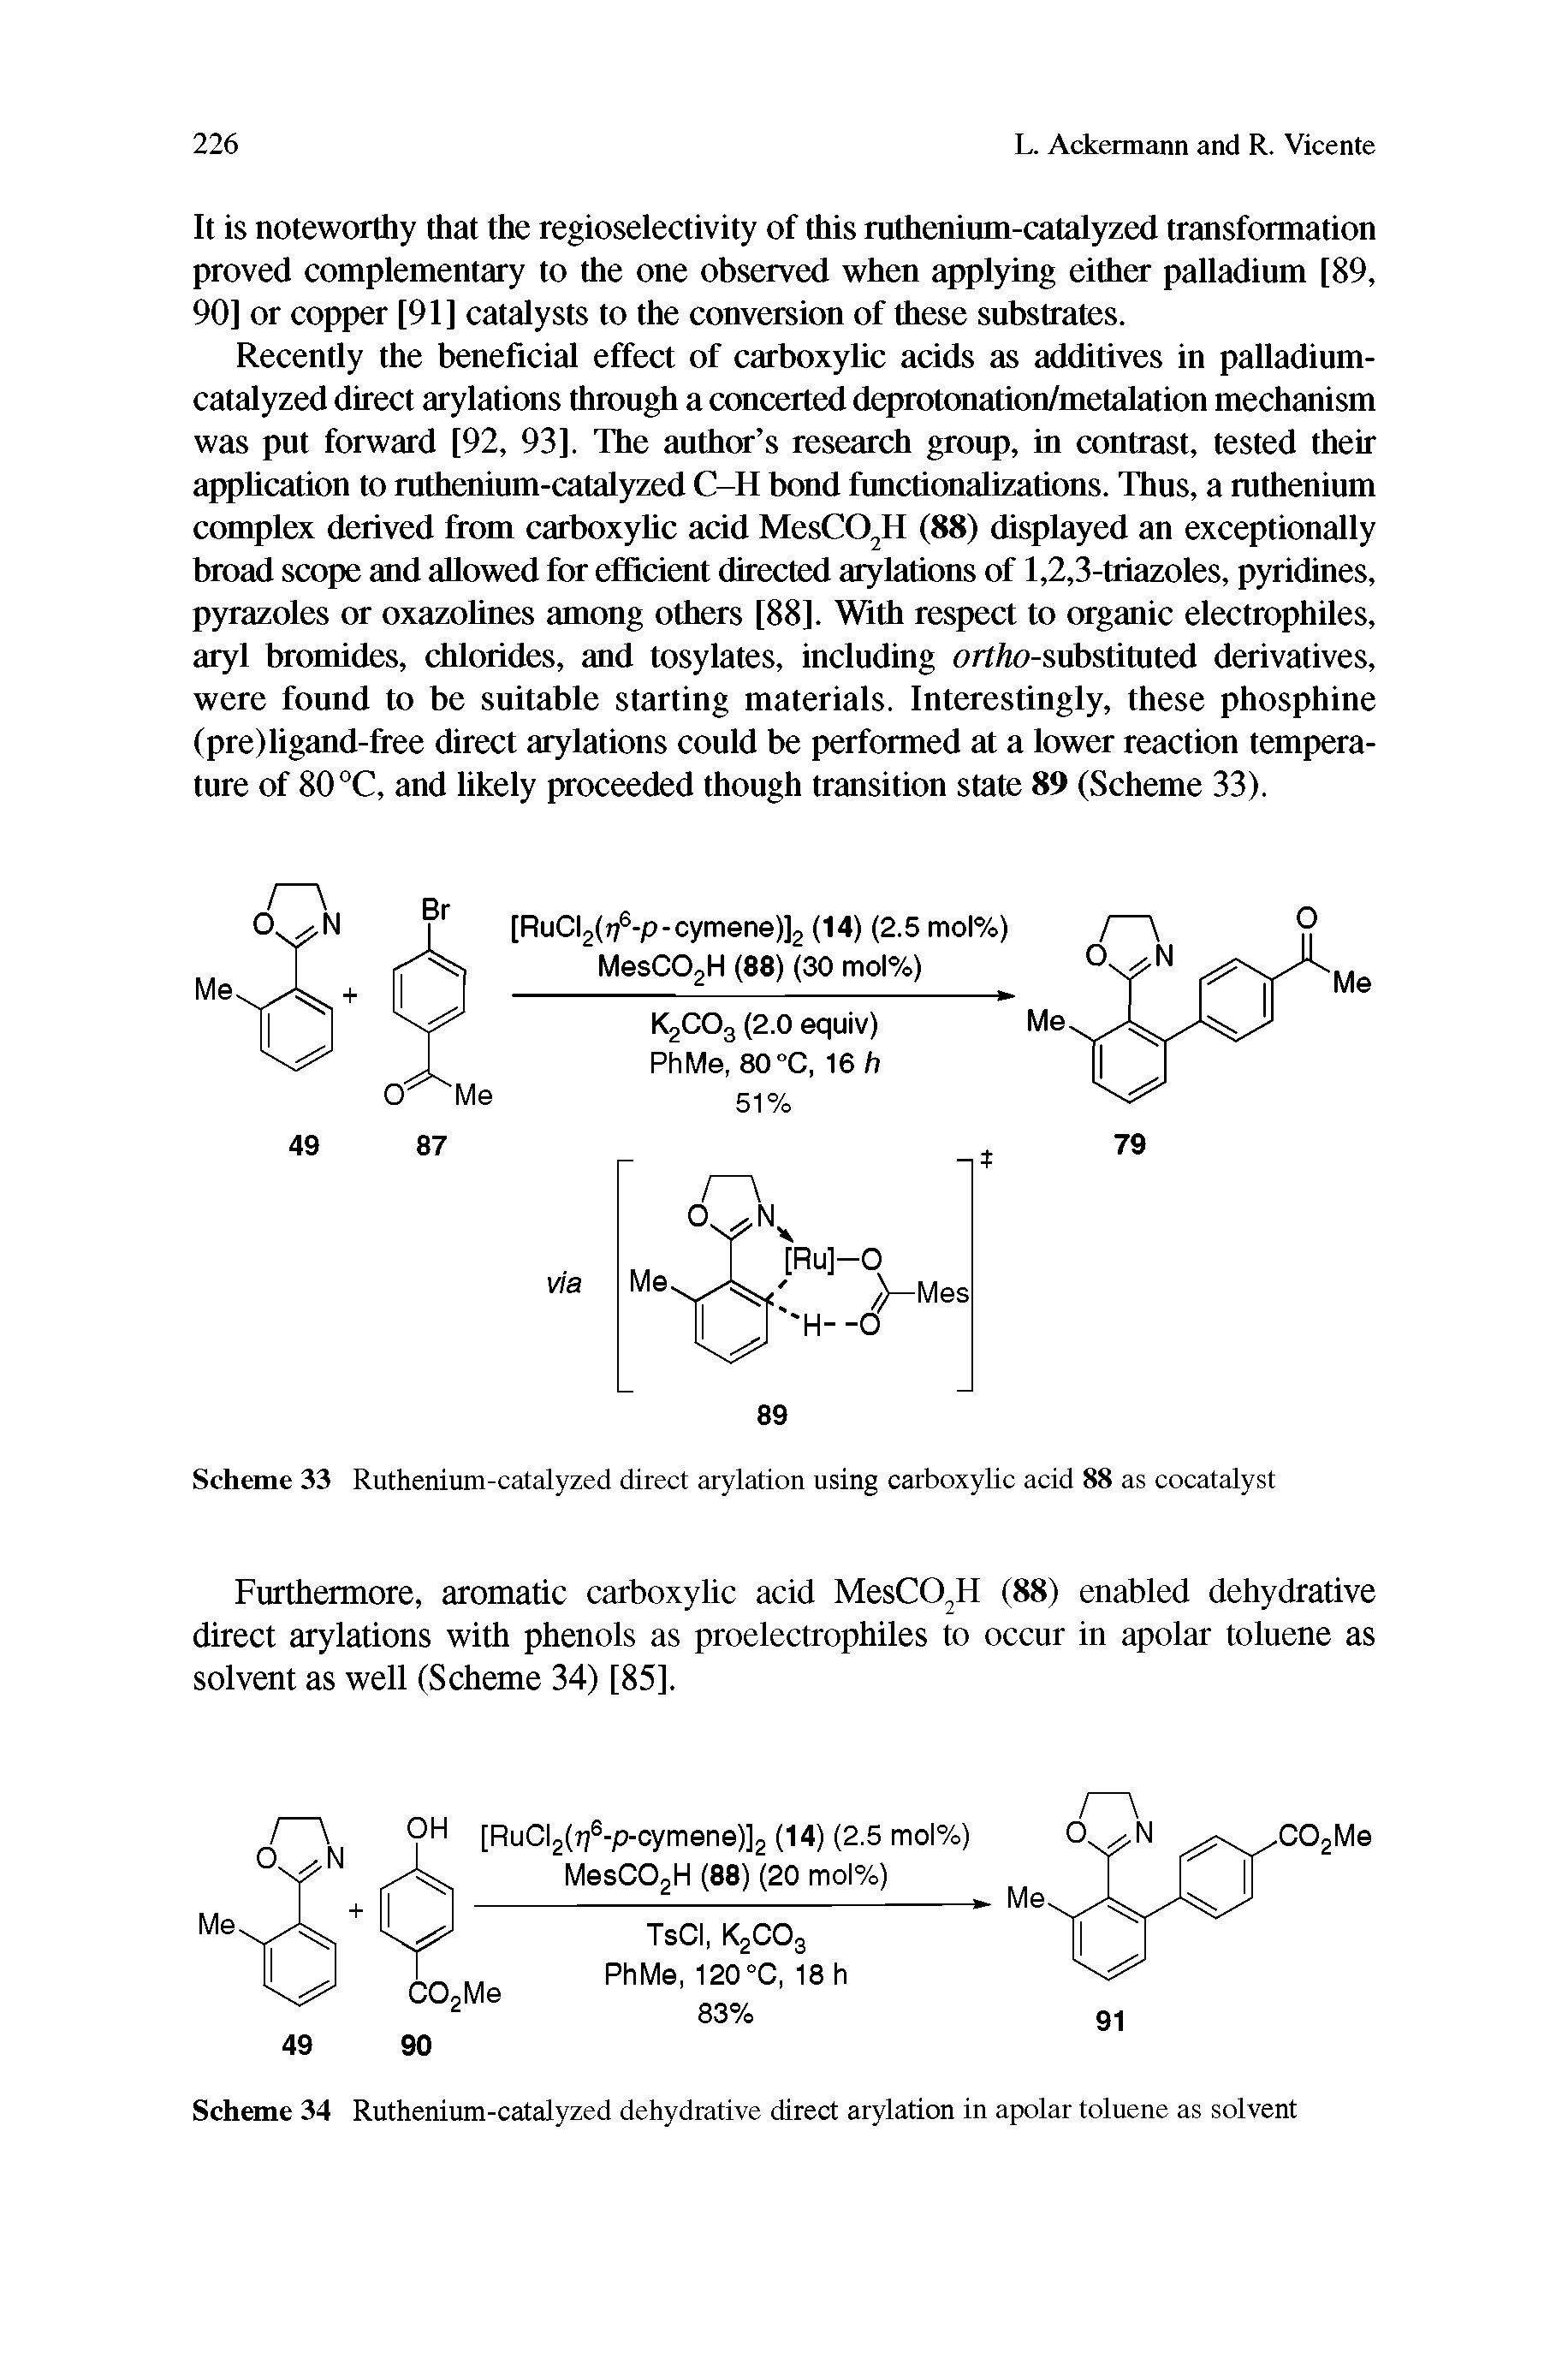 Scheme 33 Ruthenium-catalyzed direct arylation using carboxylic acid 88 as cocatalyst...